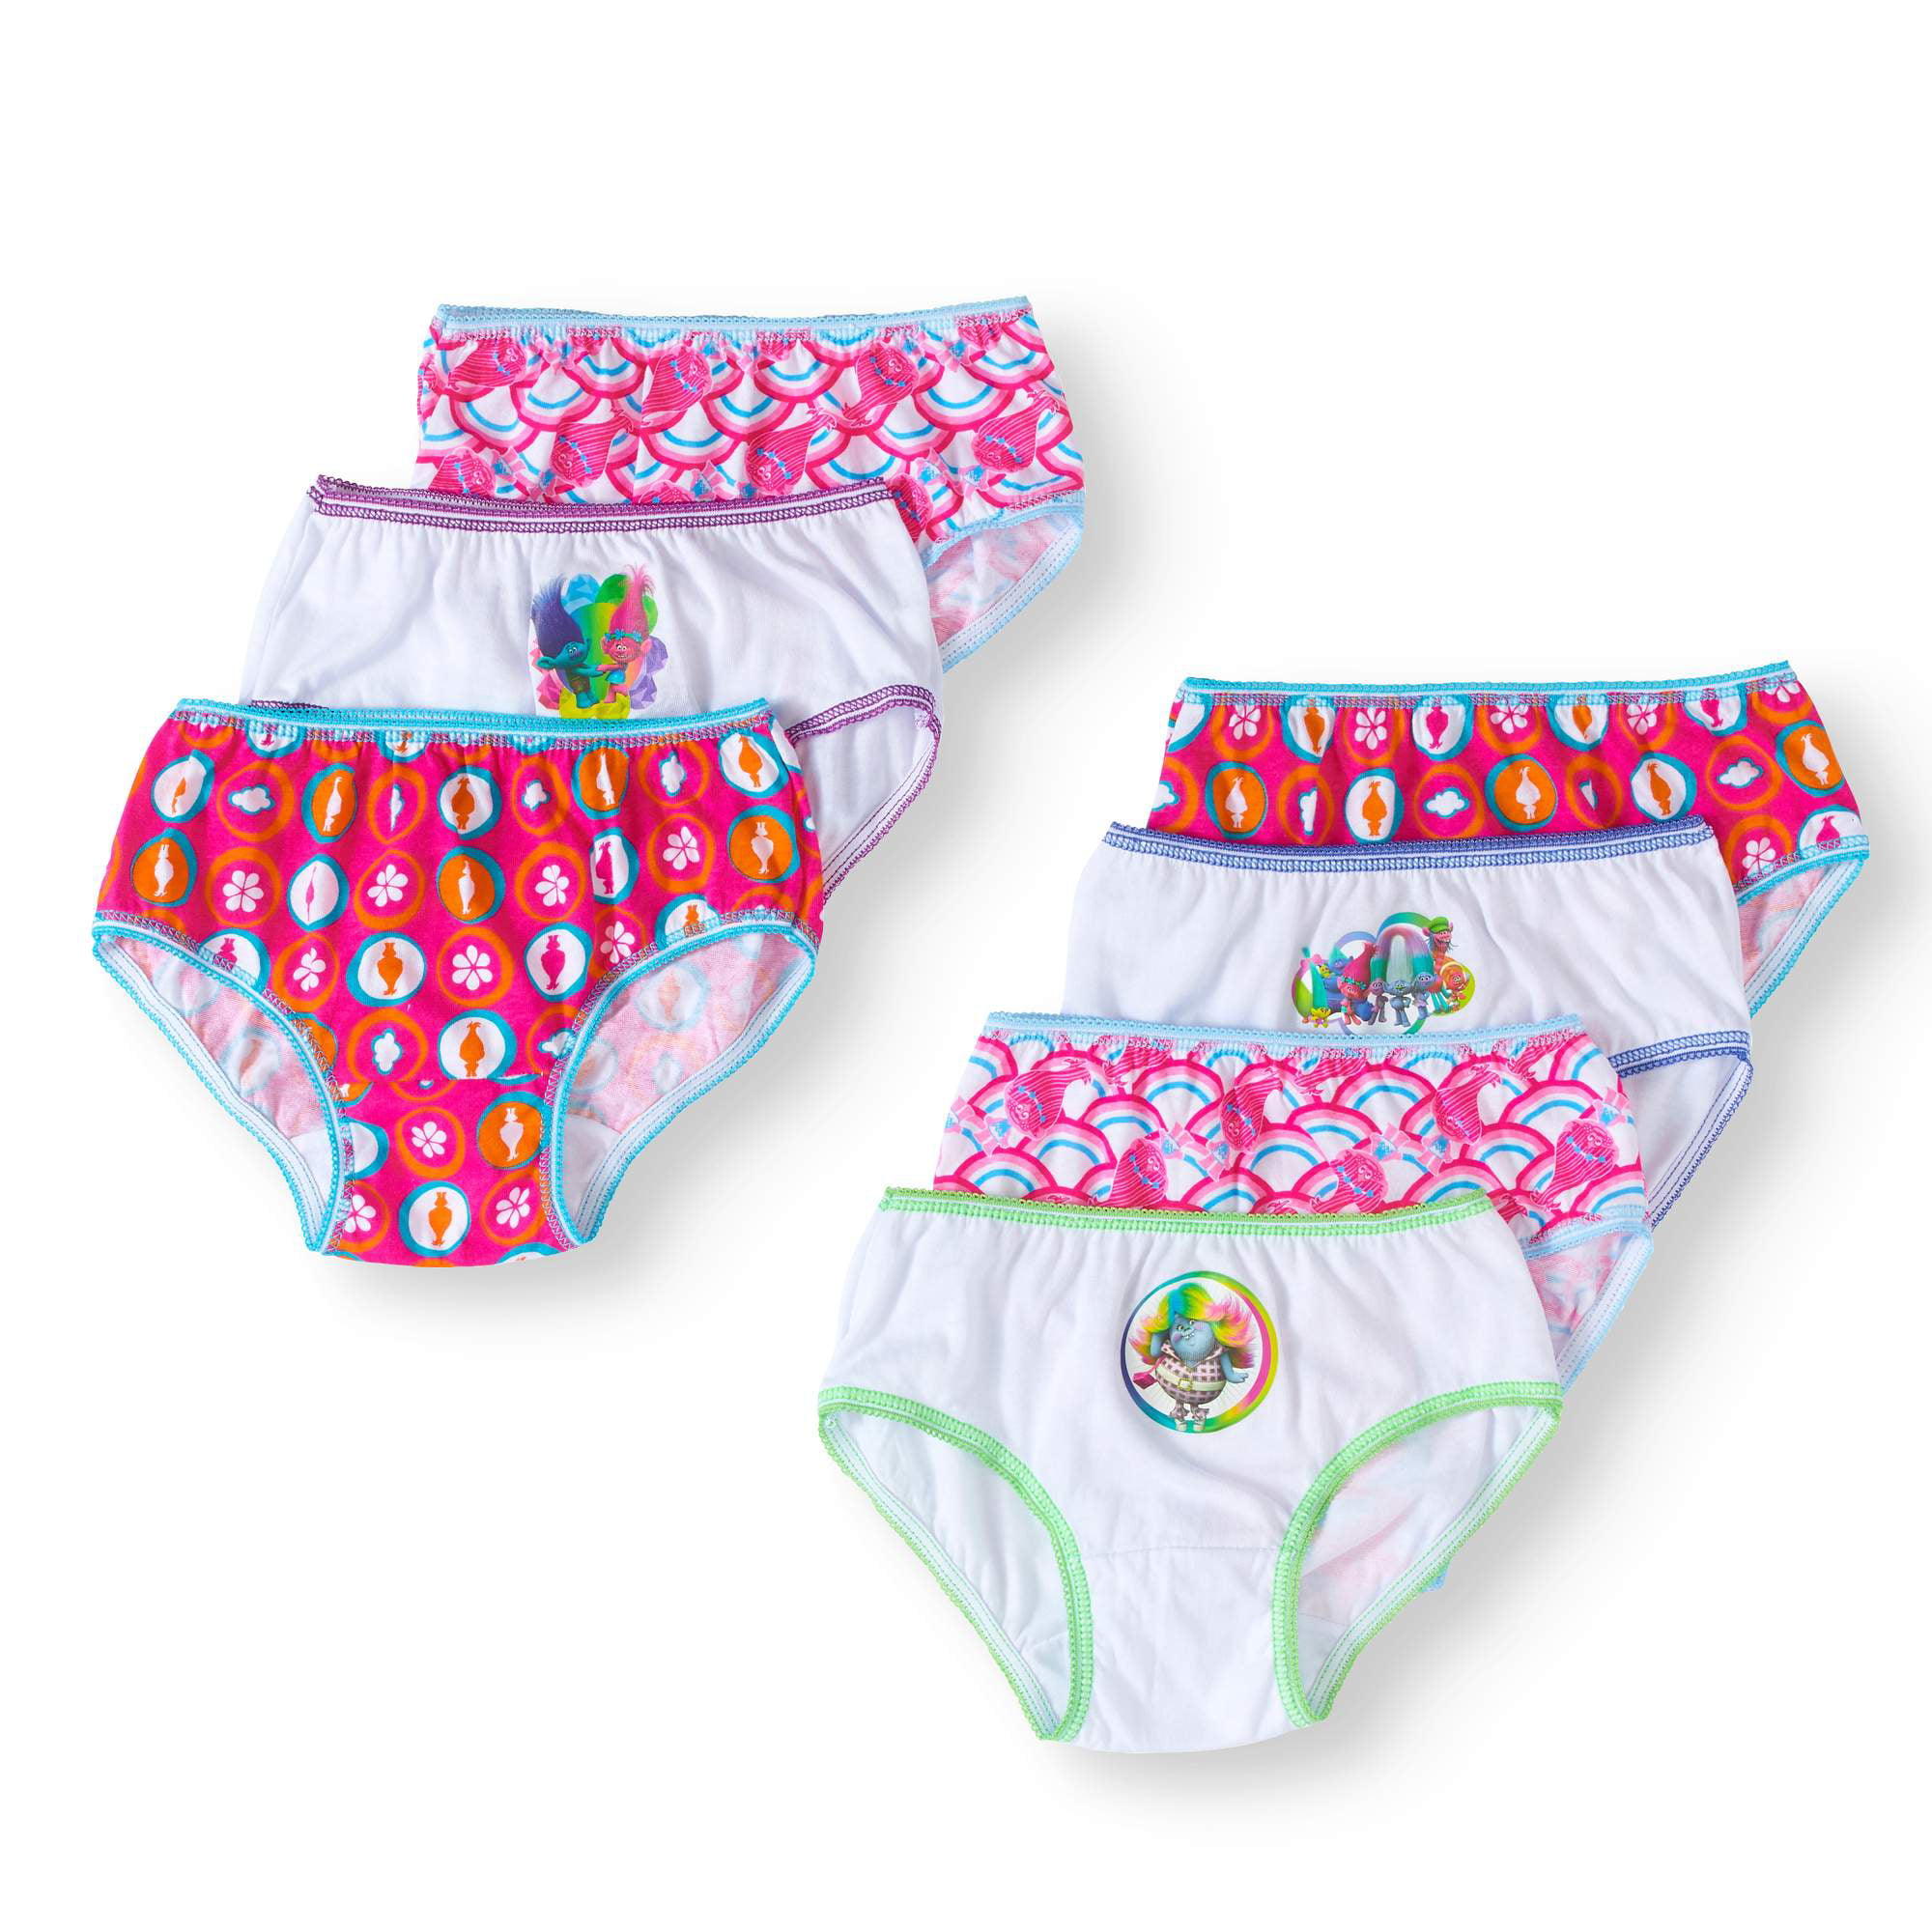 Trolls Dream Works Cotton Undies 7 Panties Underwear Toddler Girls